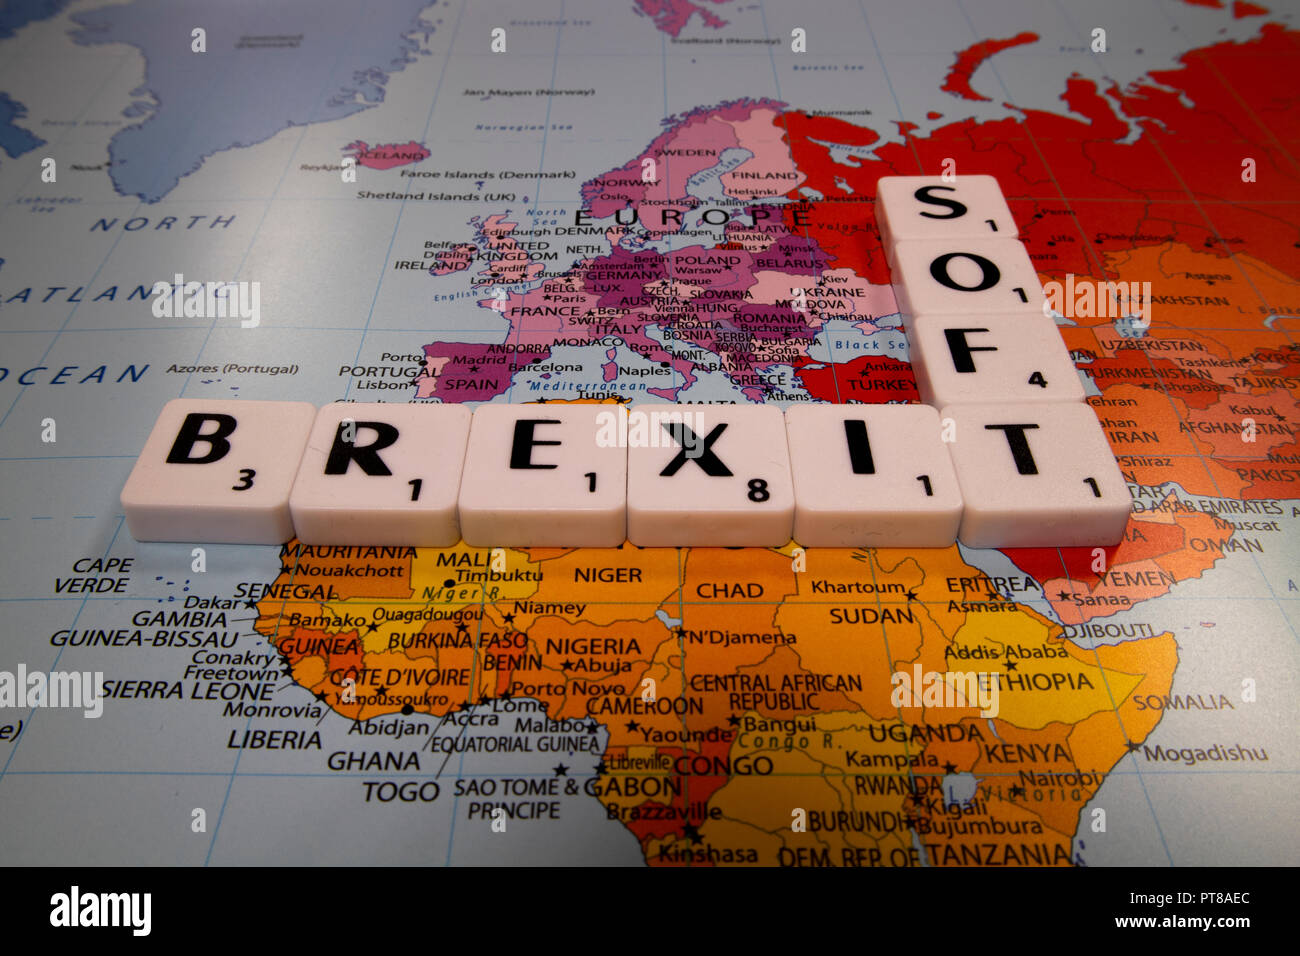 Die weiche Brexit, des Vereinigten Königreichs aus der Europäischen Union, die sich aus der Volksabstimmung im Juni 2016 Stockfoto